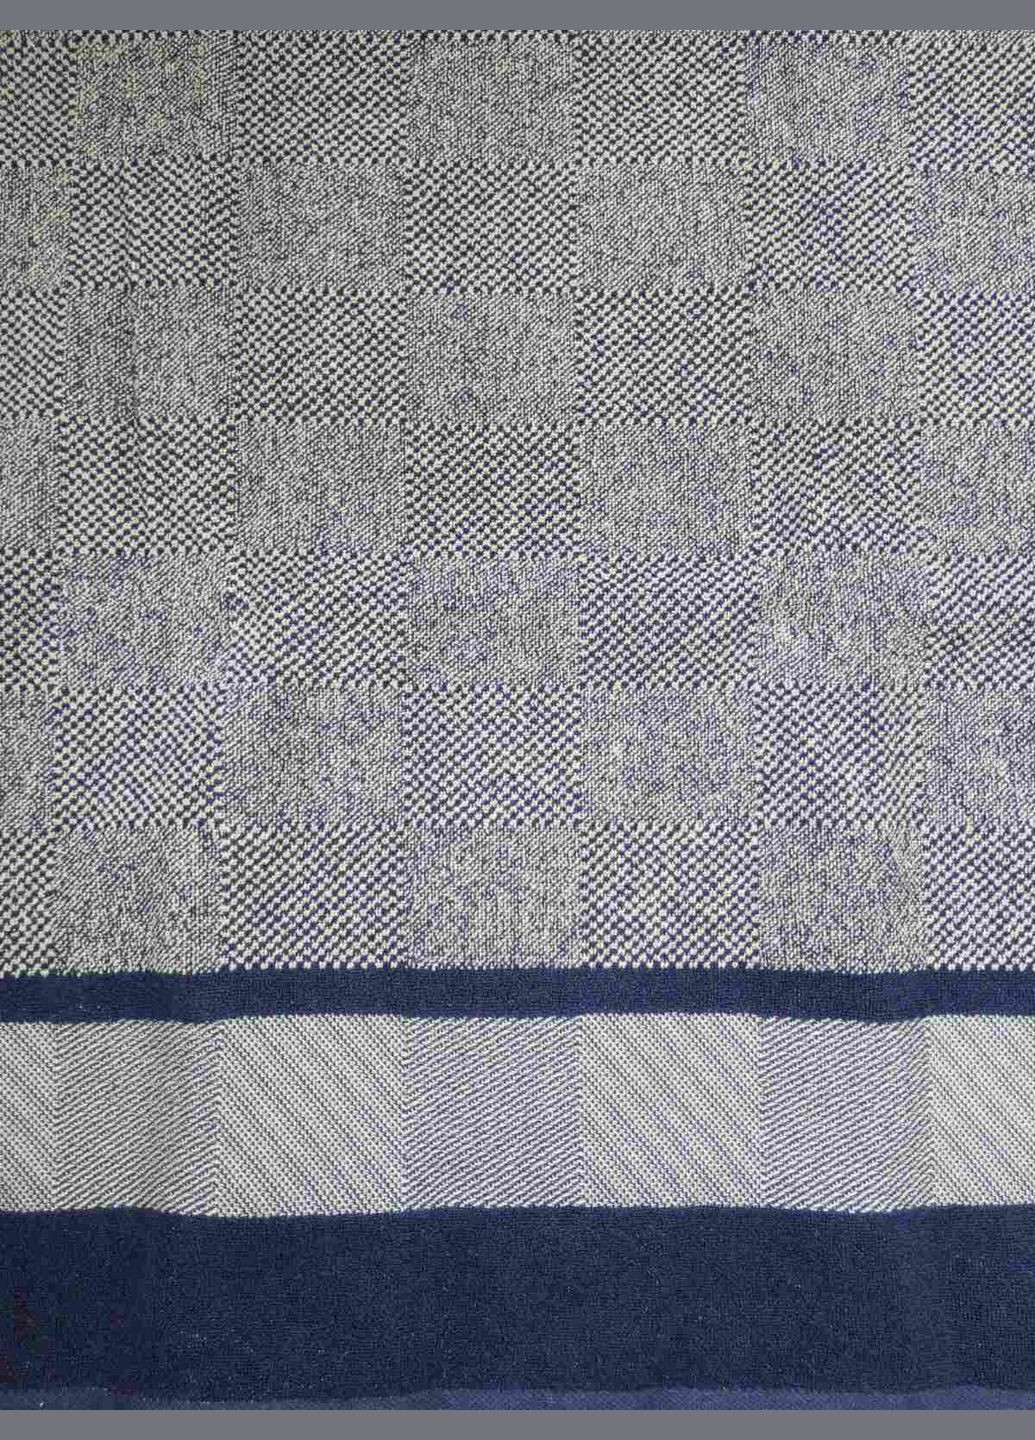 Sokuculer полотенце махровое 70х140 жаккардовое пестротканное шахматы сине-серые геометрический темно-синий производство - Турция